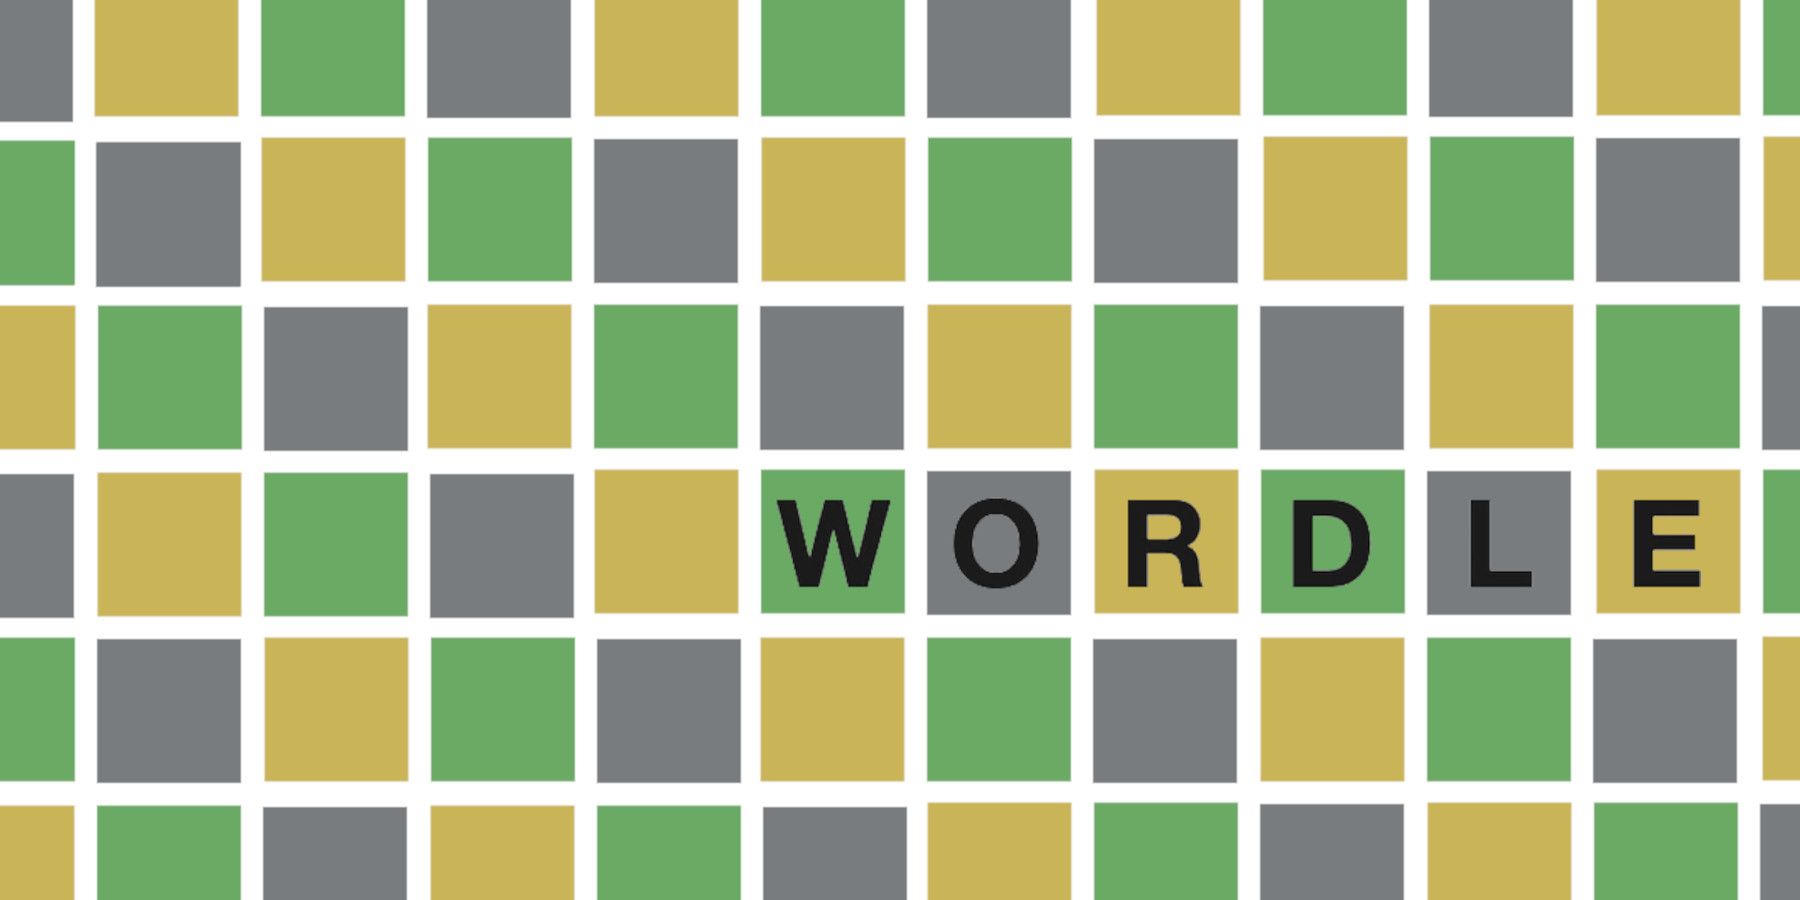 Wordle 240 პასუხი 2022 წლის 14 თებერვალს